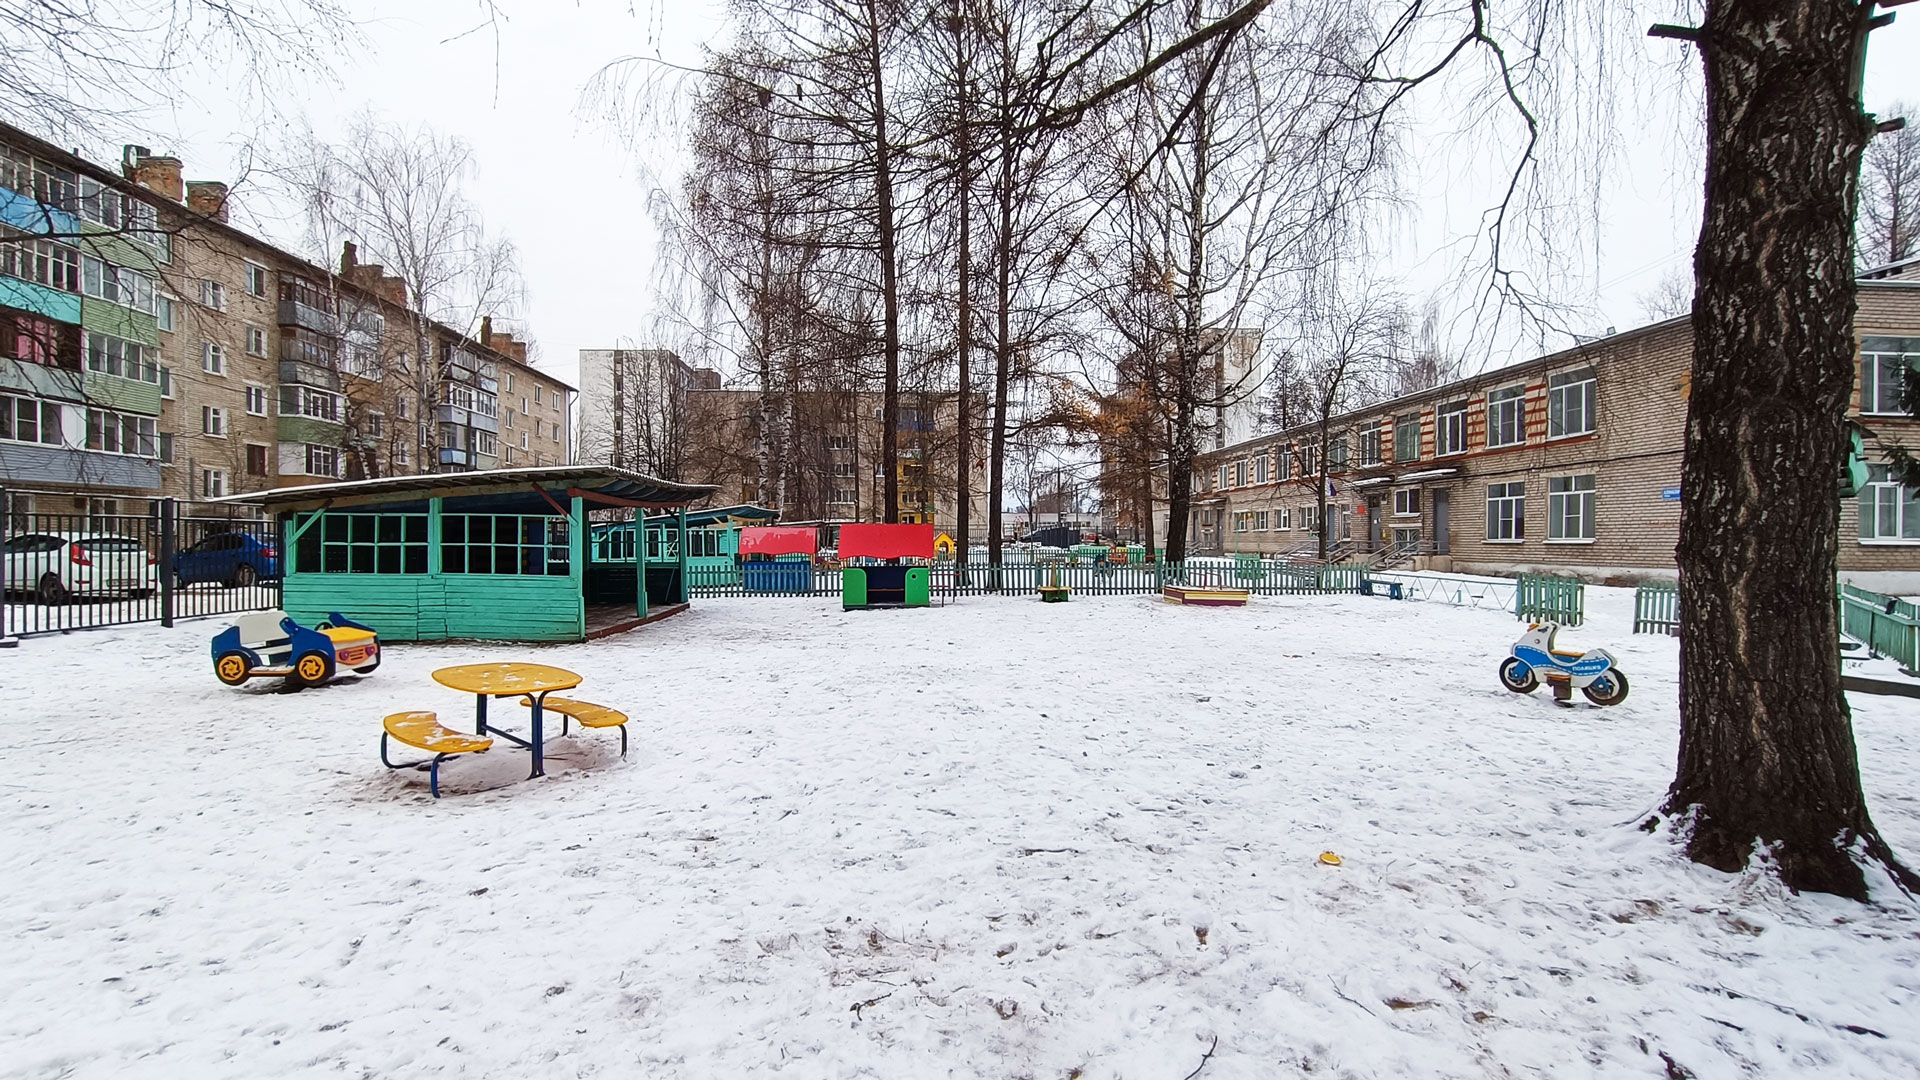 Детский сад 85 Ярославль: общий вид здания.